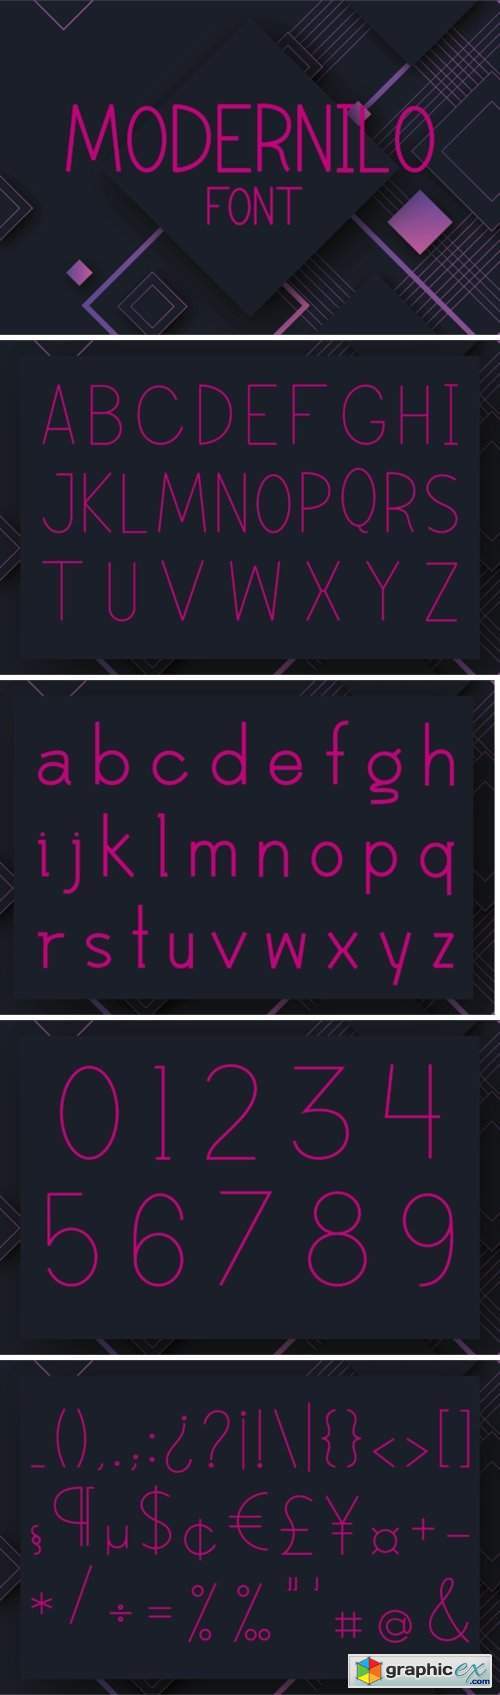 Modernilo Font